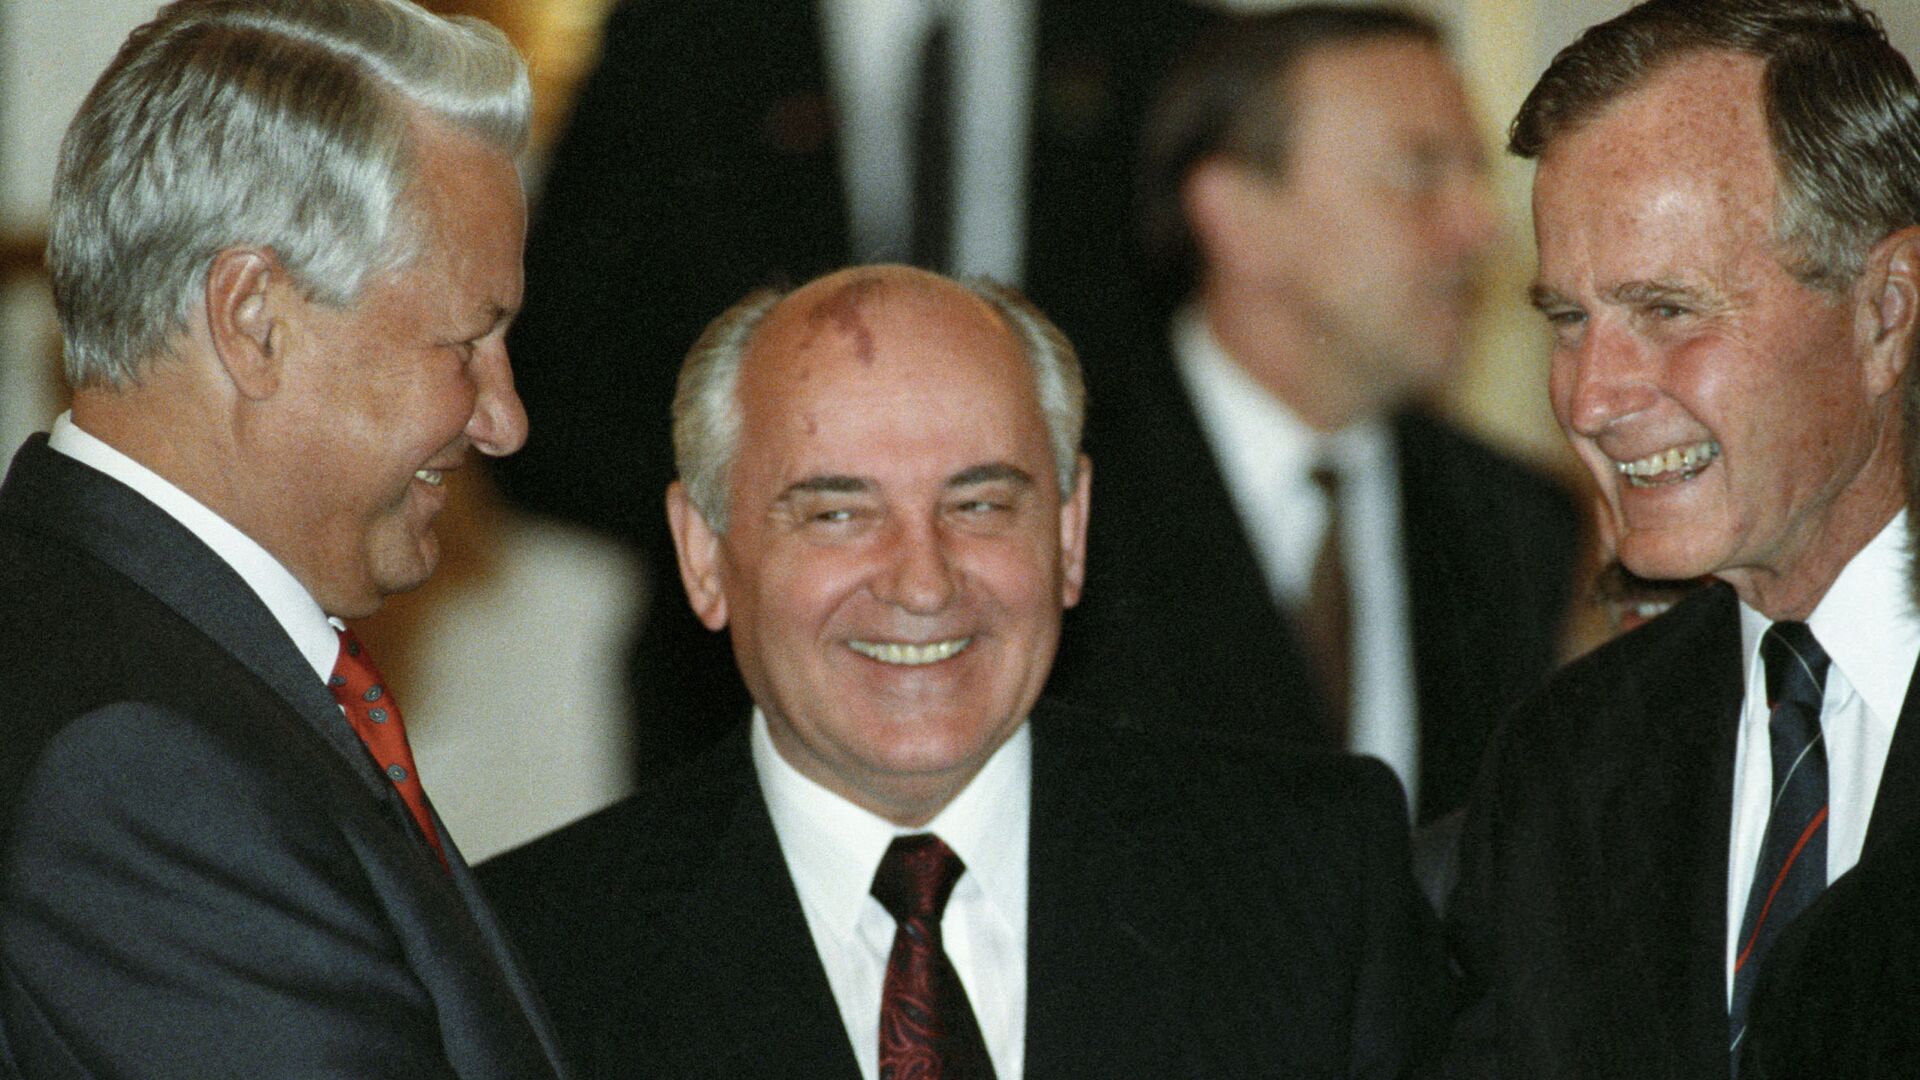 Președintele RSSFR, Boris Elțin, președintele URSS, Mihail Gorbaciov, și președintele SUA, George W. Bush, discută în timpul unei cine oficiale la Kremlin. - Sputnik Moldova, 1920, 16.08.2021